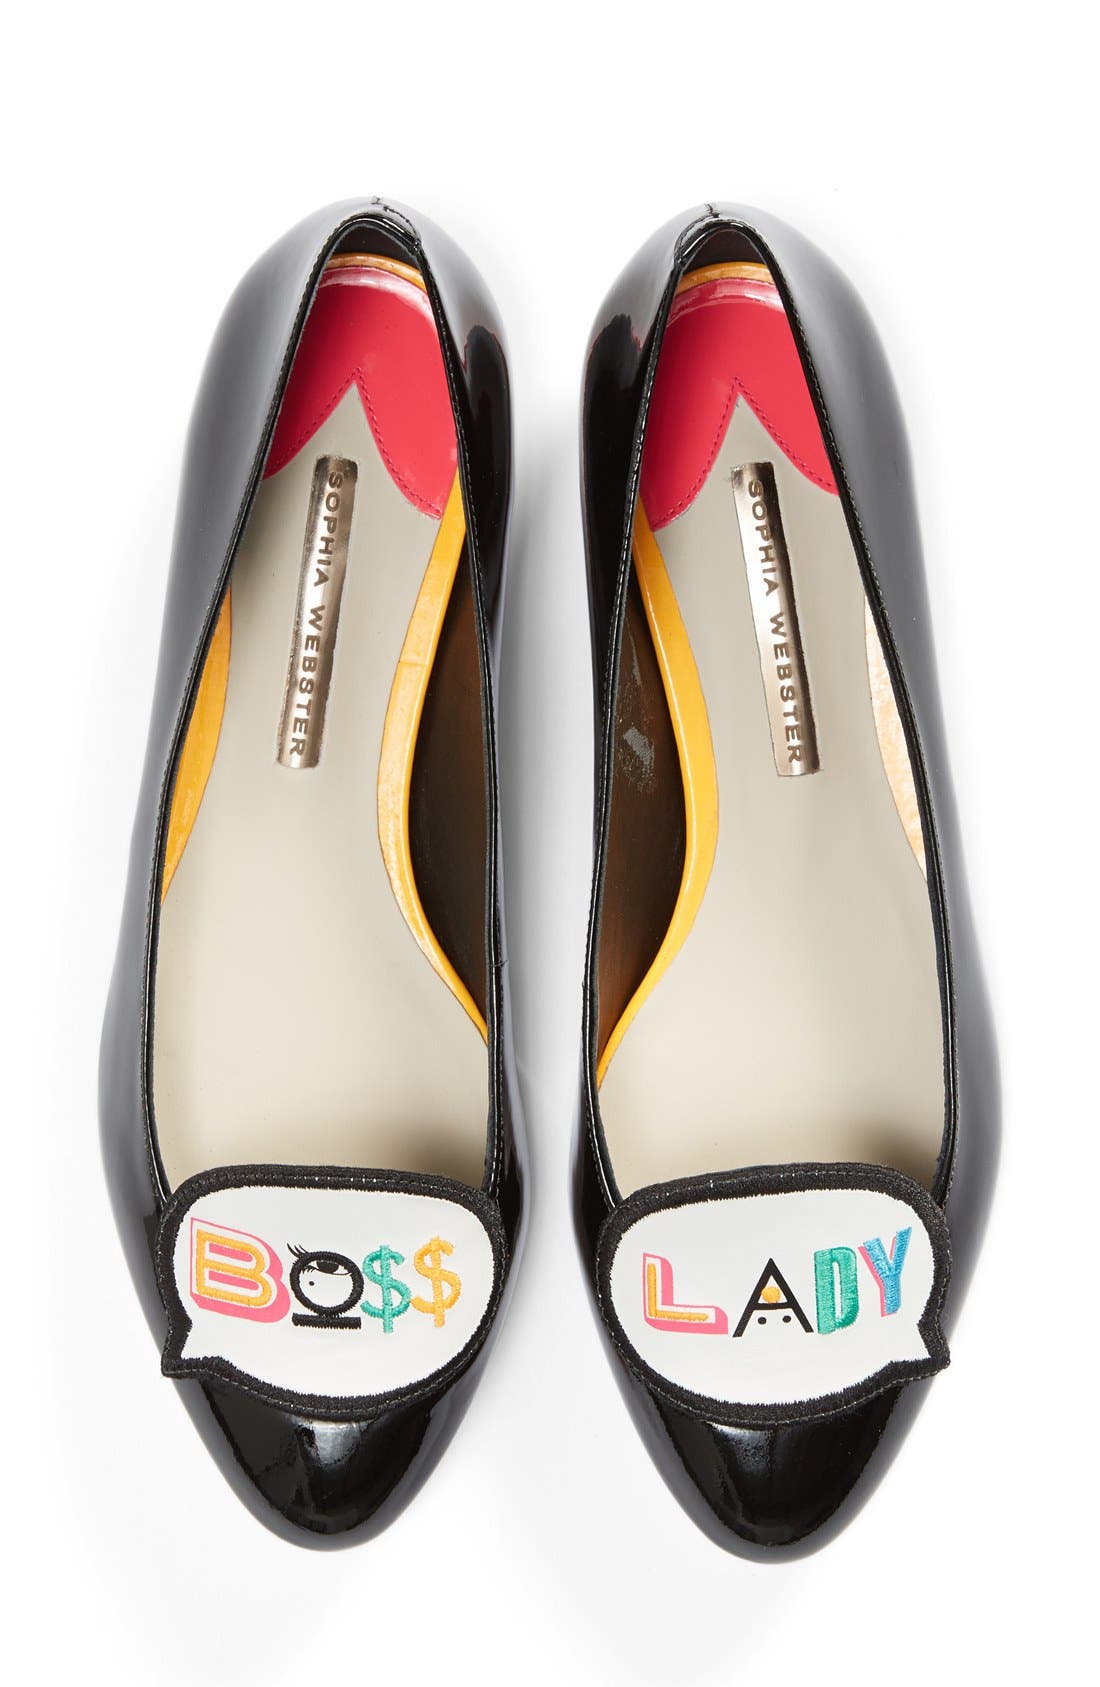 sophia webster boss lady shoes